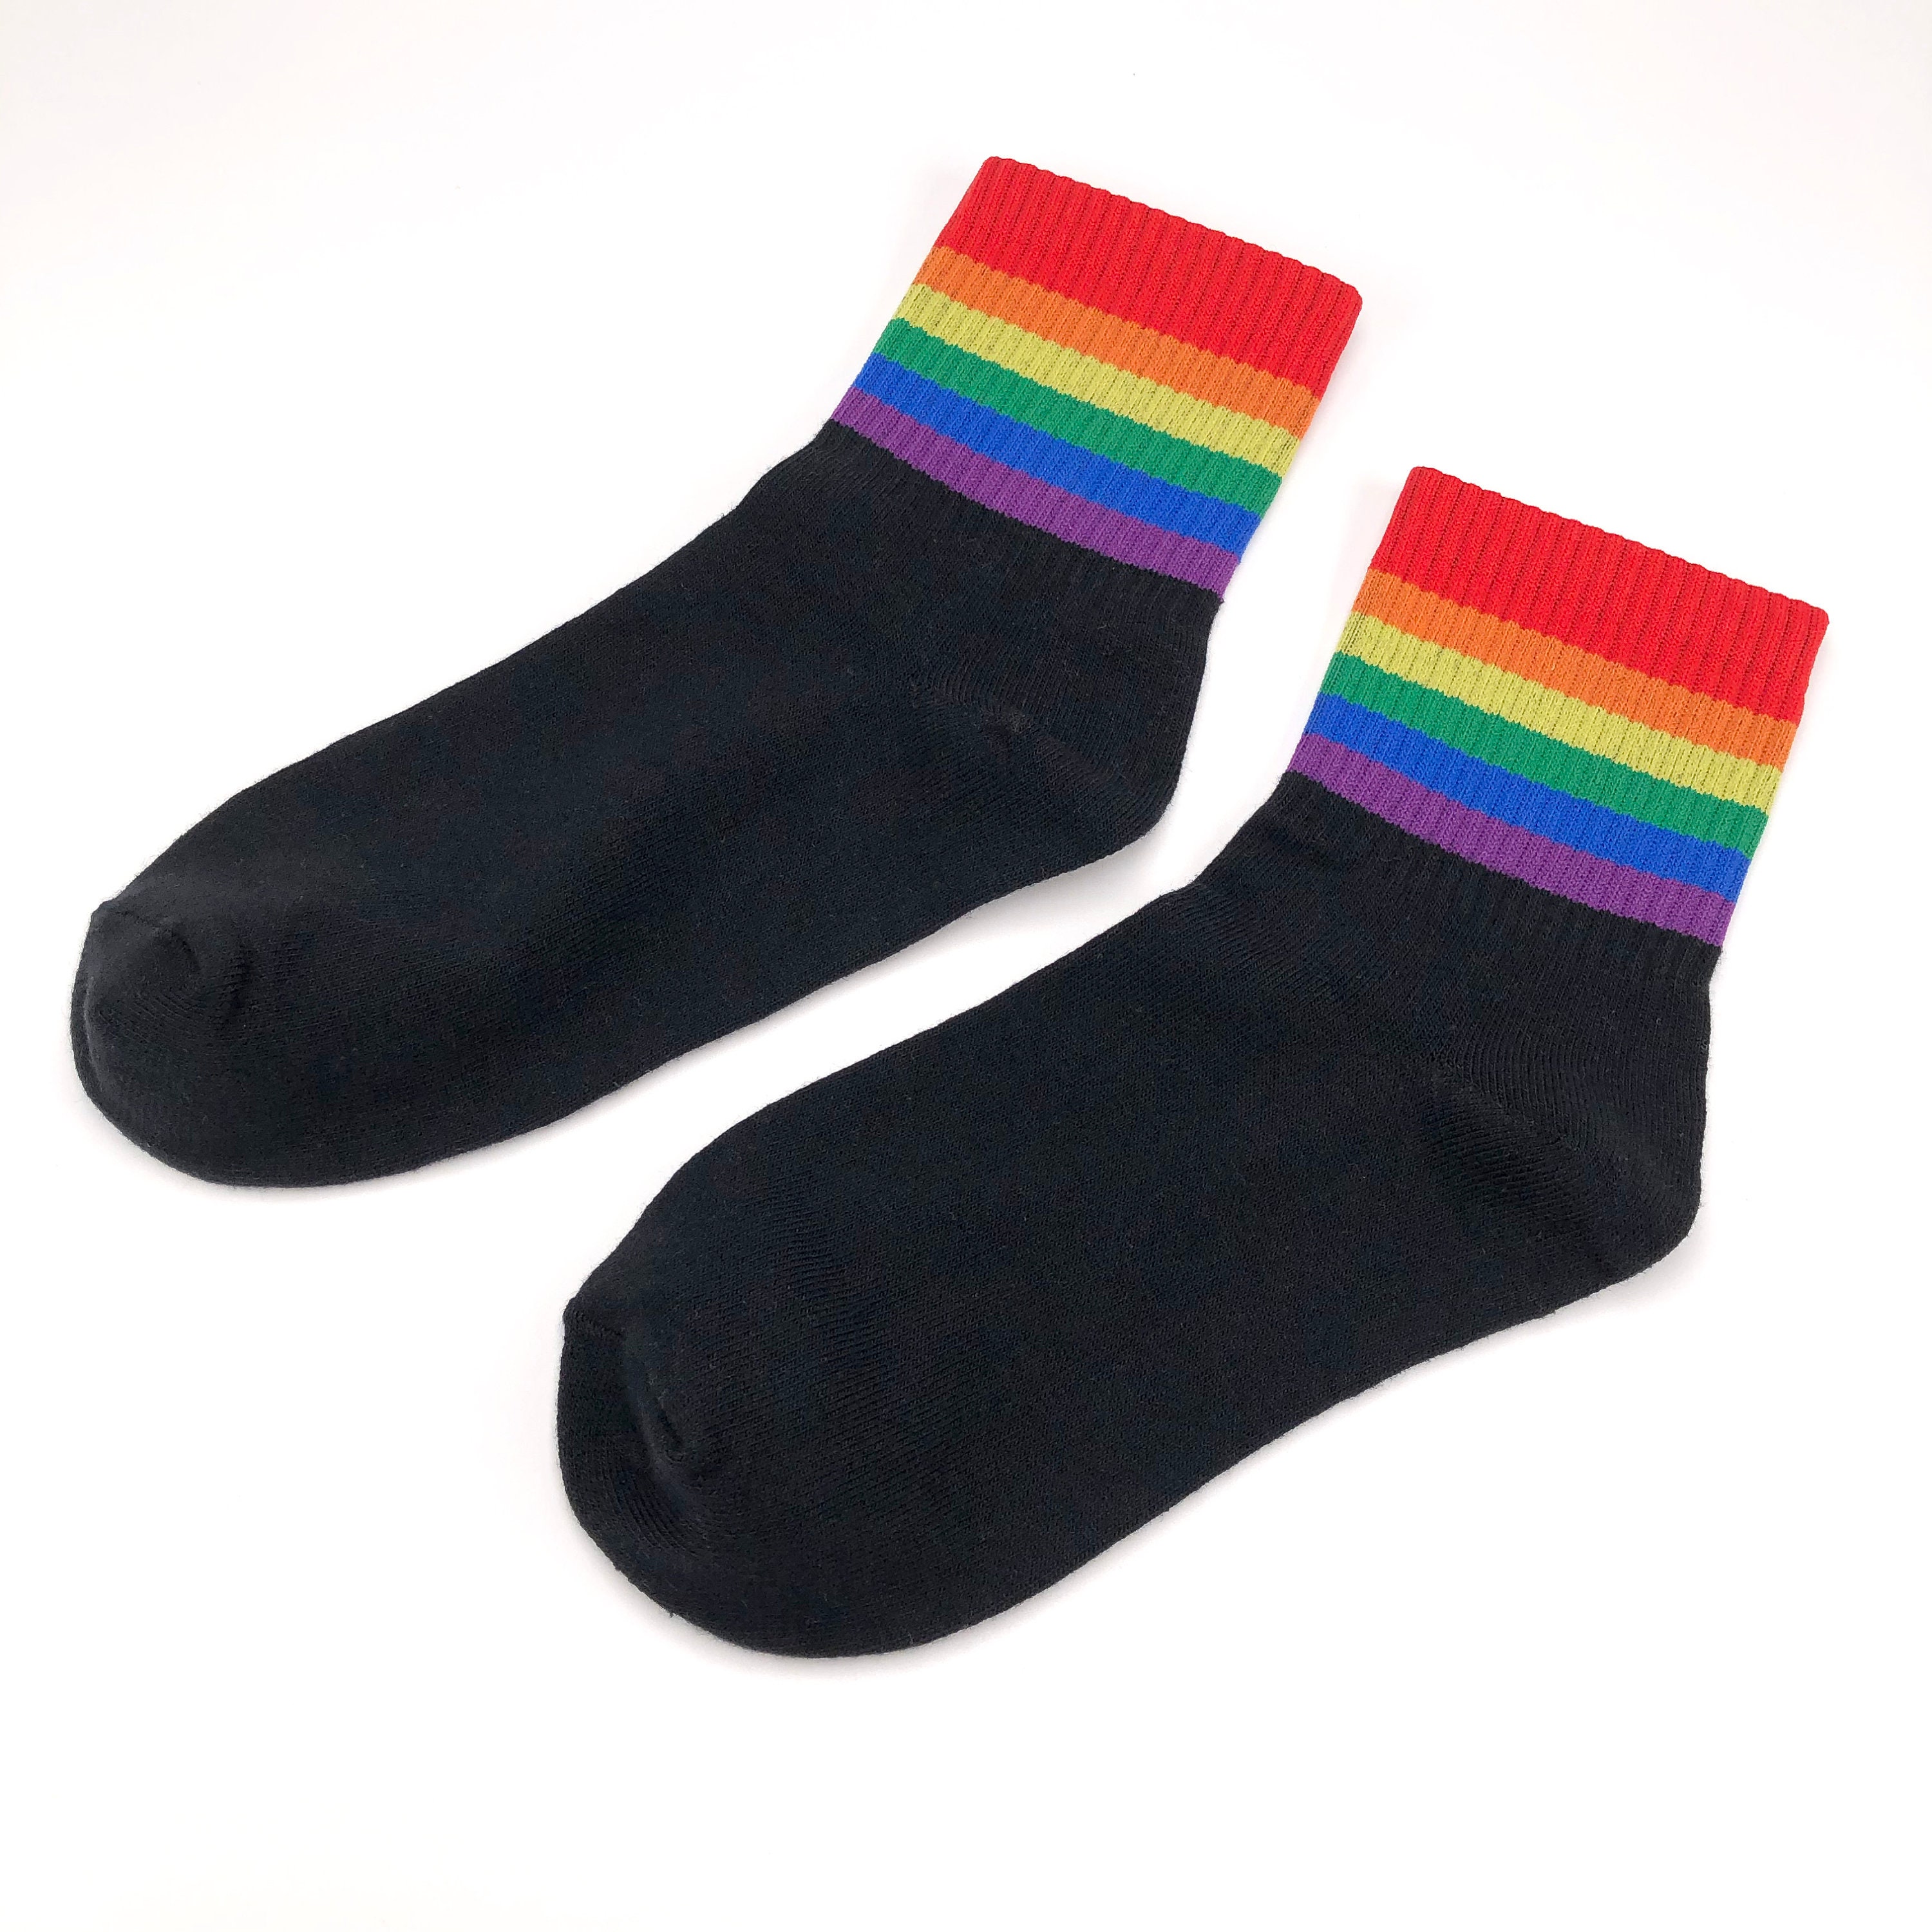 Colored socks Pride Socks Rainbow socks Cotton socks | Etsy